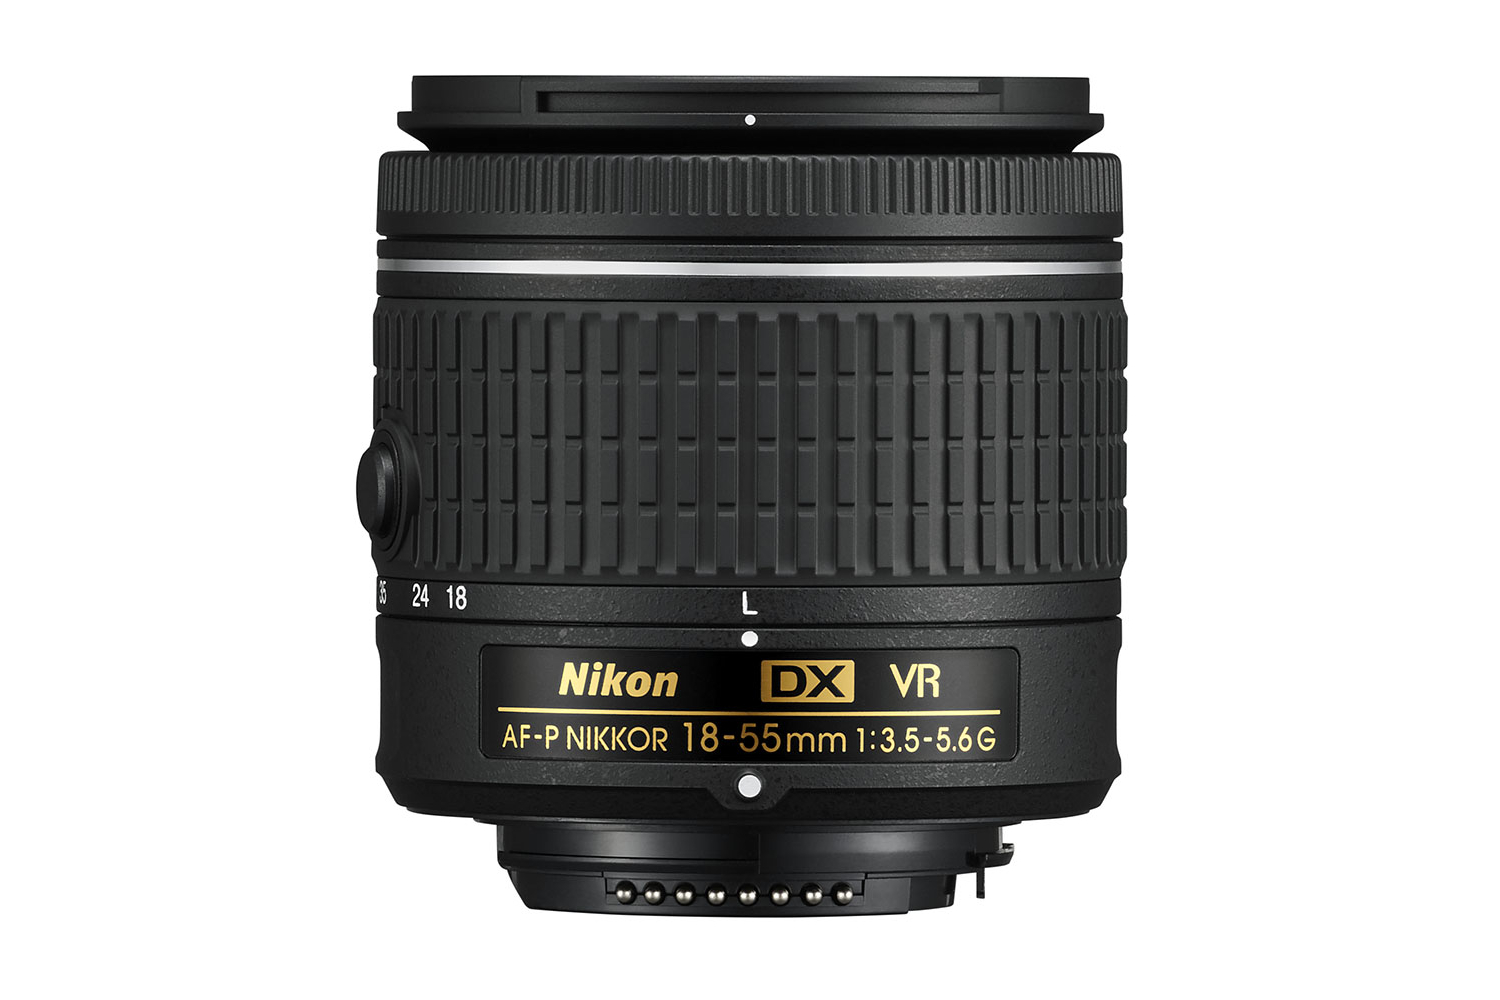 nikon d3400 dslr entry level camera nikkor lenses dx afp 18 55 vr 2